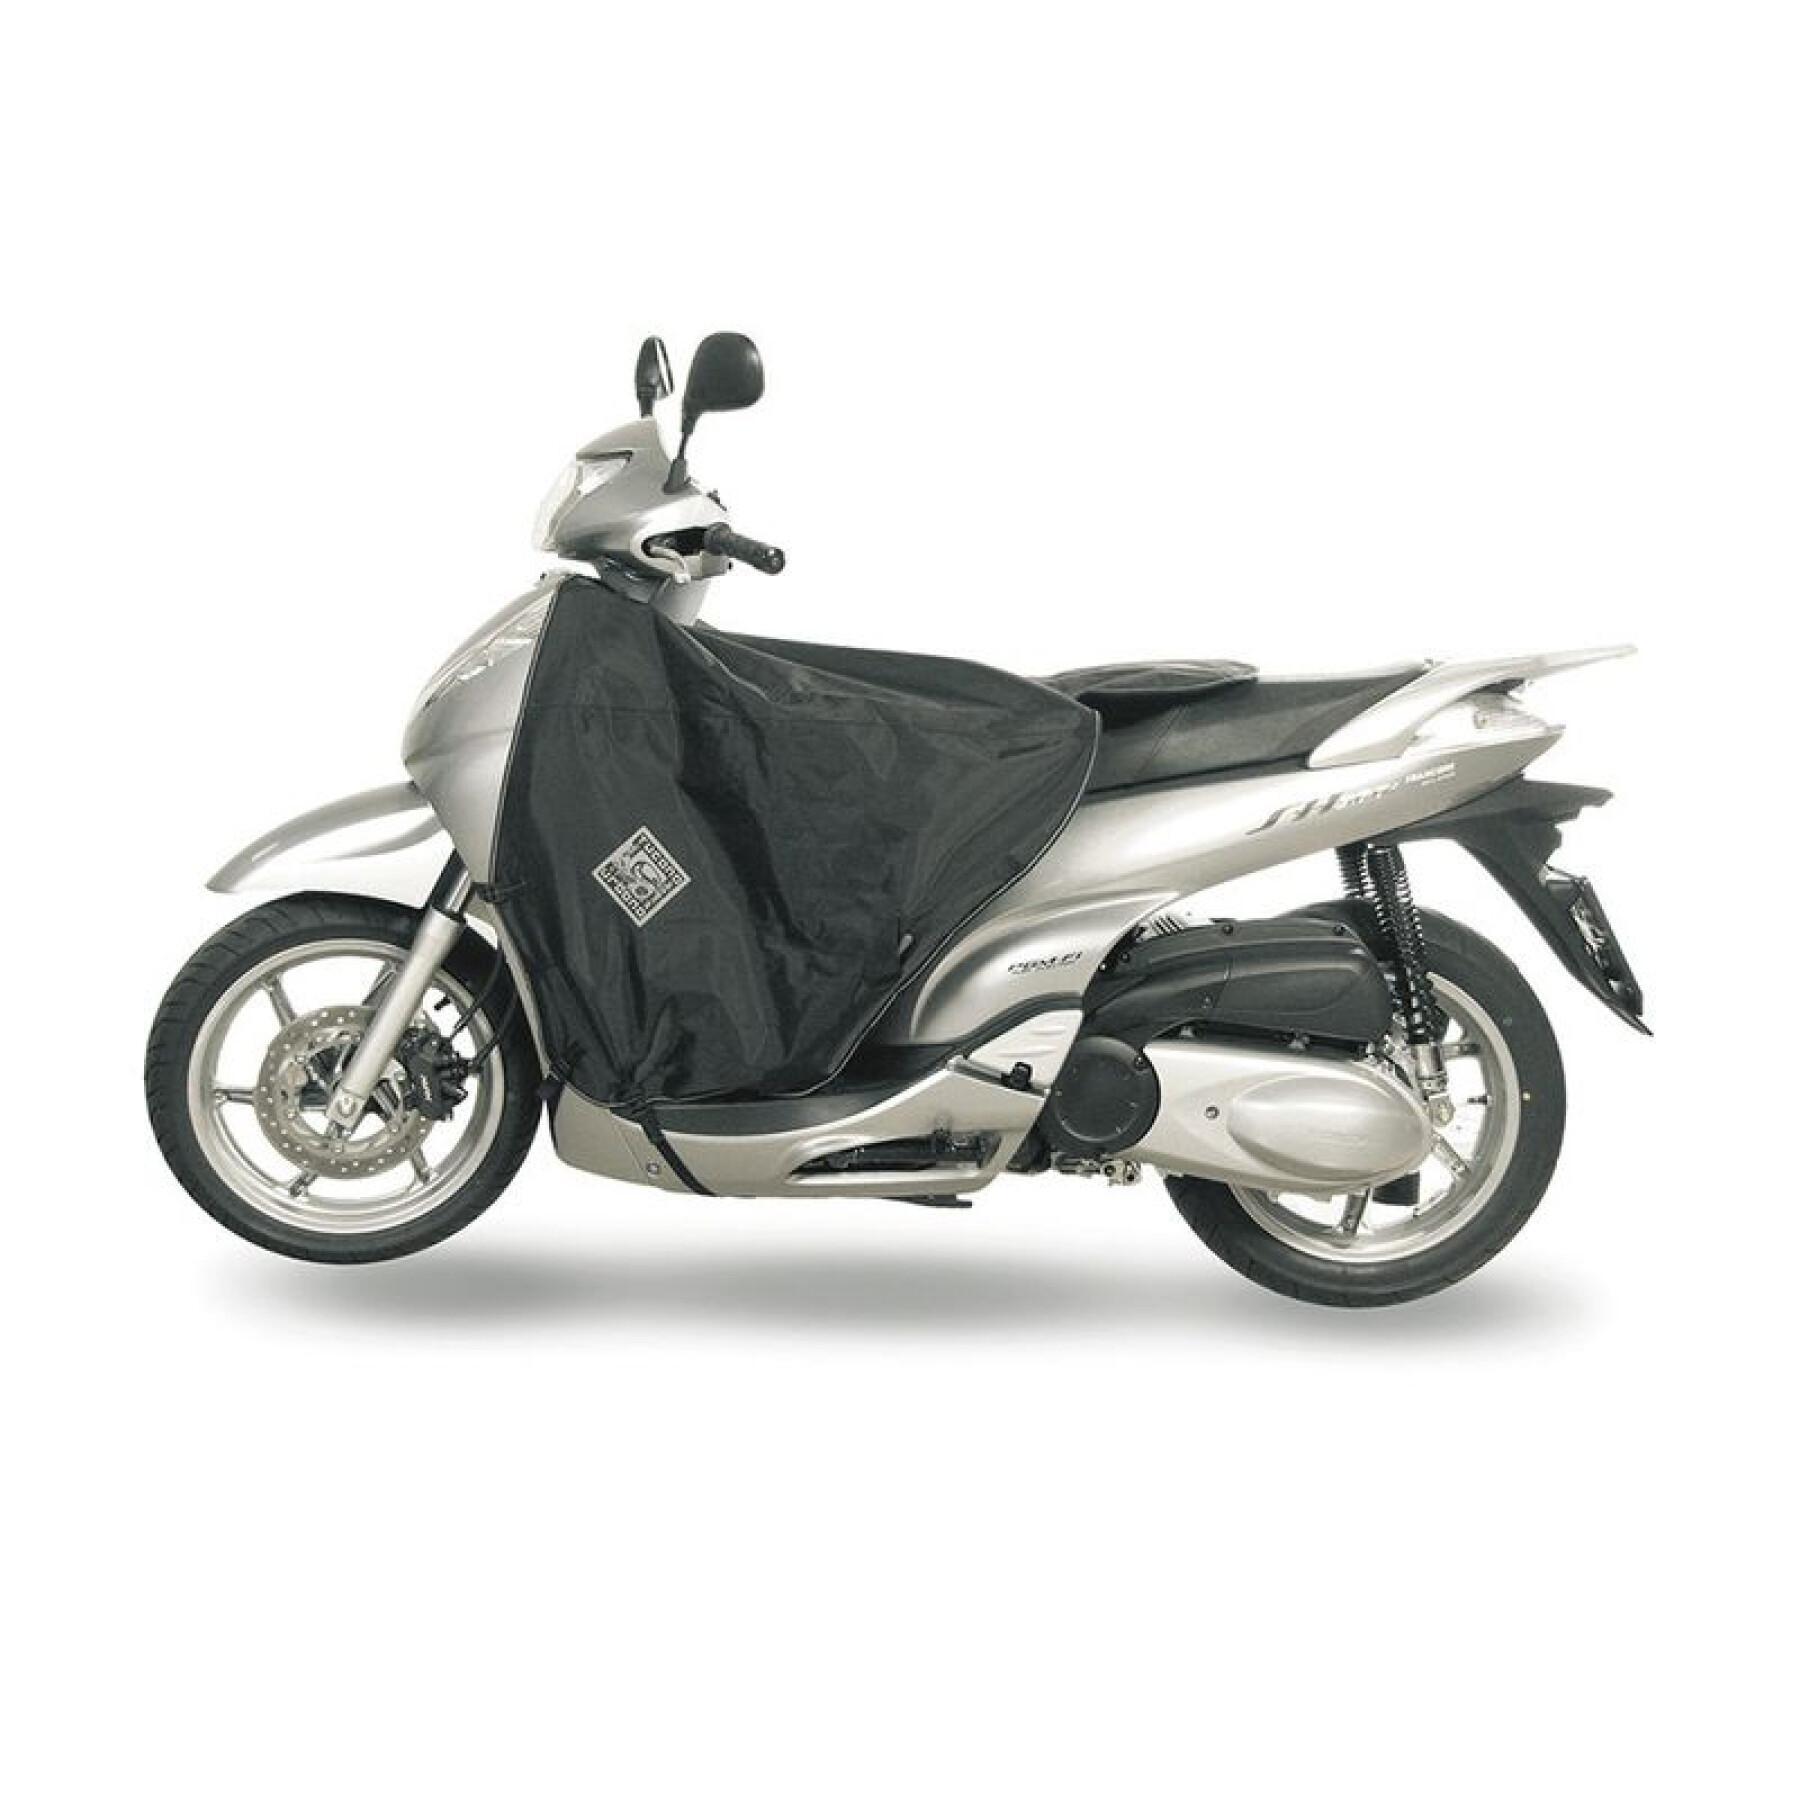 Grembiule per scooter Tucano Urbano Termoscud Honda Sh 300 (jusqu'en 2010)